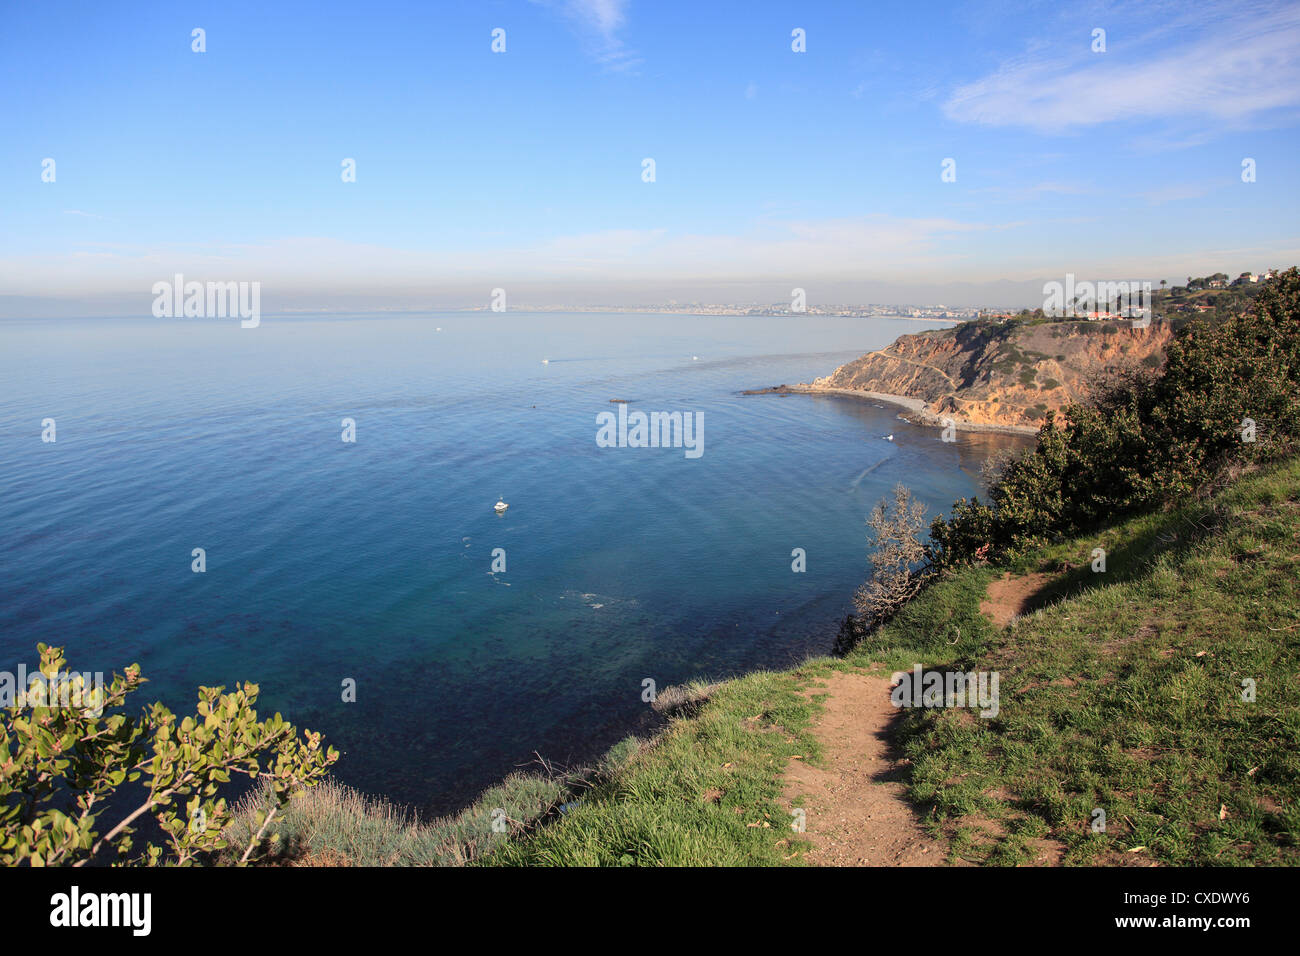 Palos Verdes, penisola sull'Oceano Pacifico, Los Angeles, California, Stati Uniti d'America, America del Nord Foto Stock